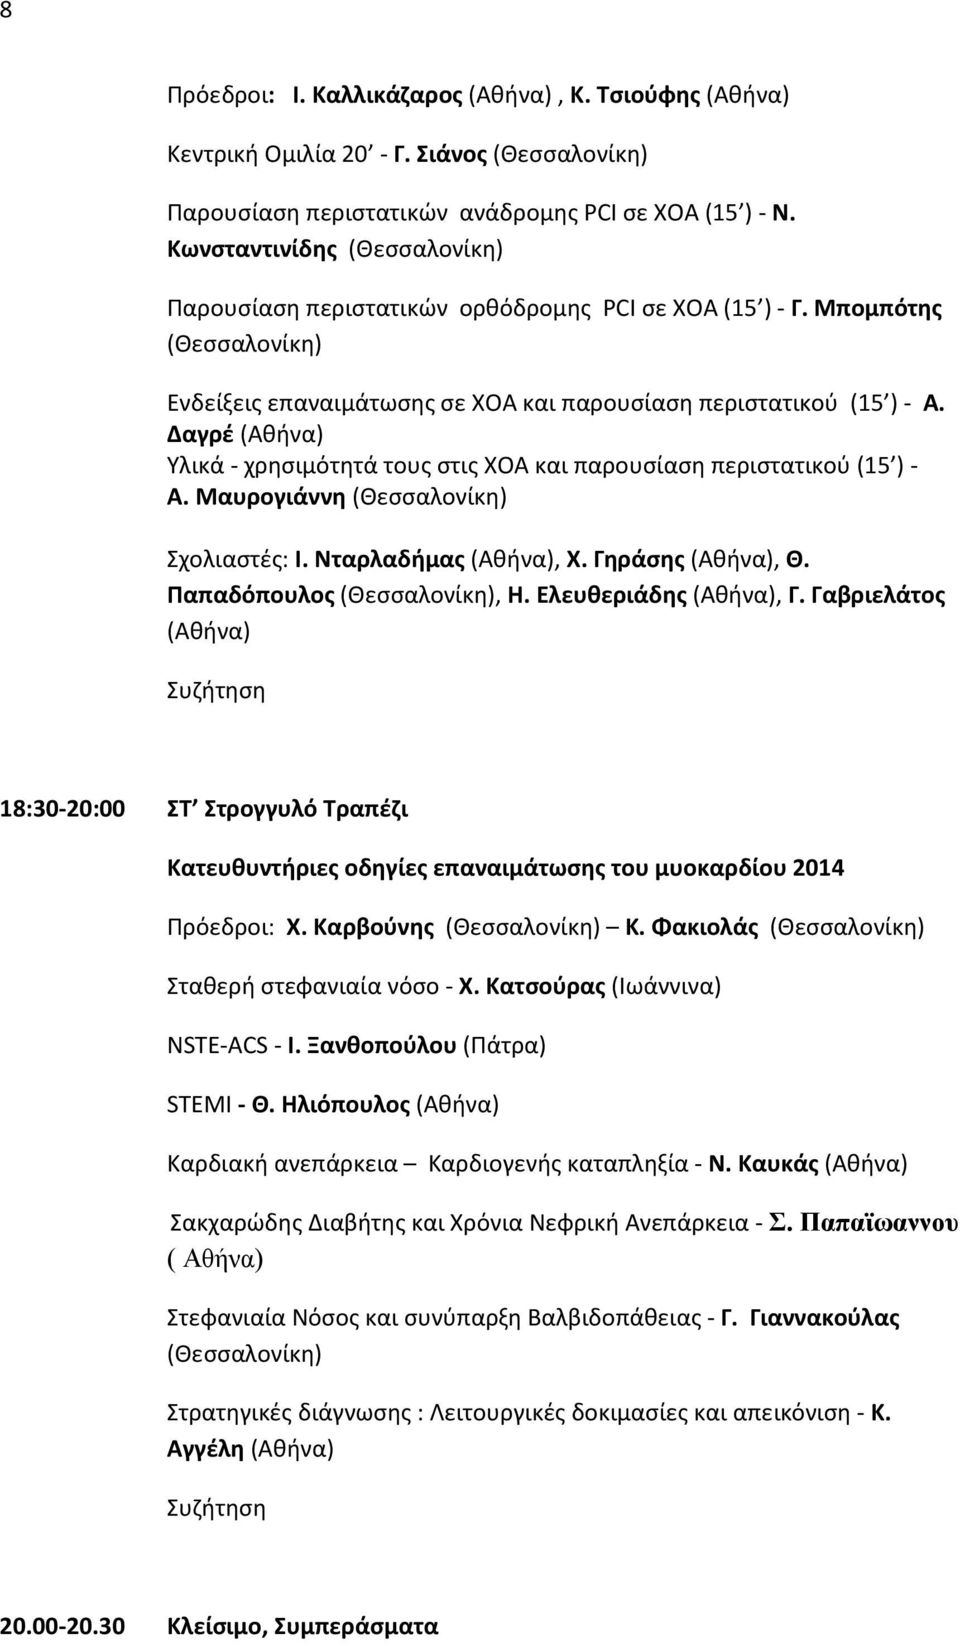 Νταρλαδήμας, Χ. Γηράσης, Θ. Παπαδόπουλος, Η. Ελευθεριάδης, Γ. Γαβριελάτος 18:30-20:00 ΣΤ Στρογγυλό Τραπέζι Κατευθυντήριες οδηγίες επαναιμάτωσης του μυοκαρδίου 2014 Πρόεδροι: Χ. Καρβούνης Κ.